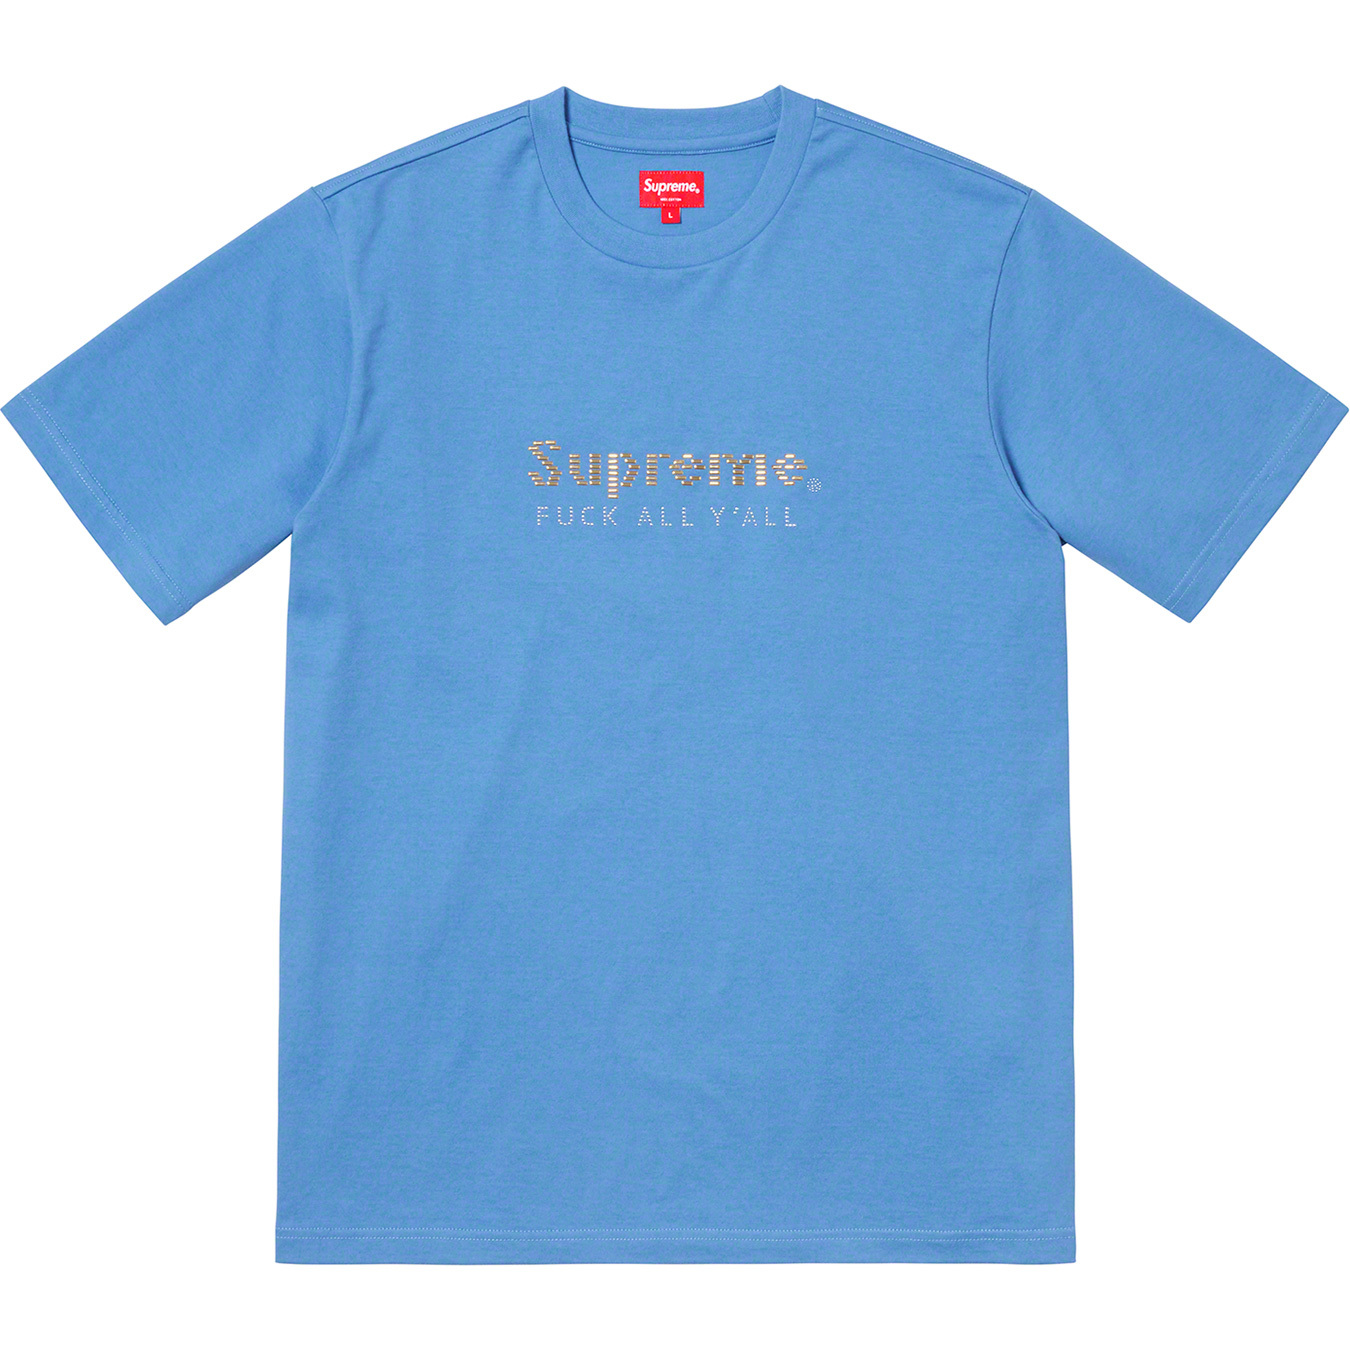 Supreme gold. Supreme футболка. Голубая футболка Supreme. Supreme ss19. Футболка Суприм оригинал.